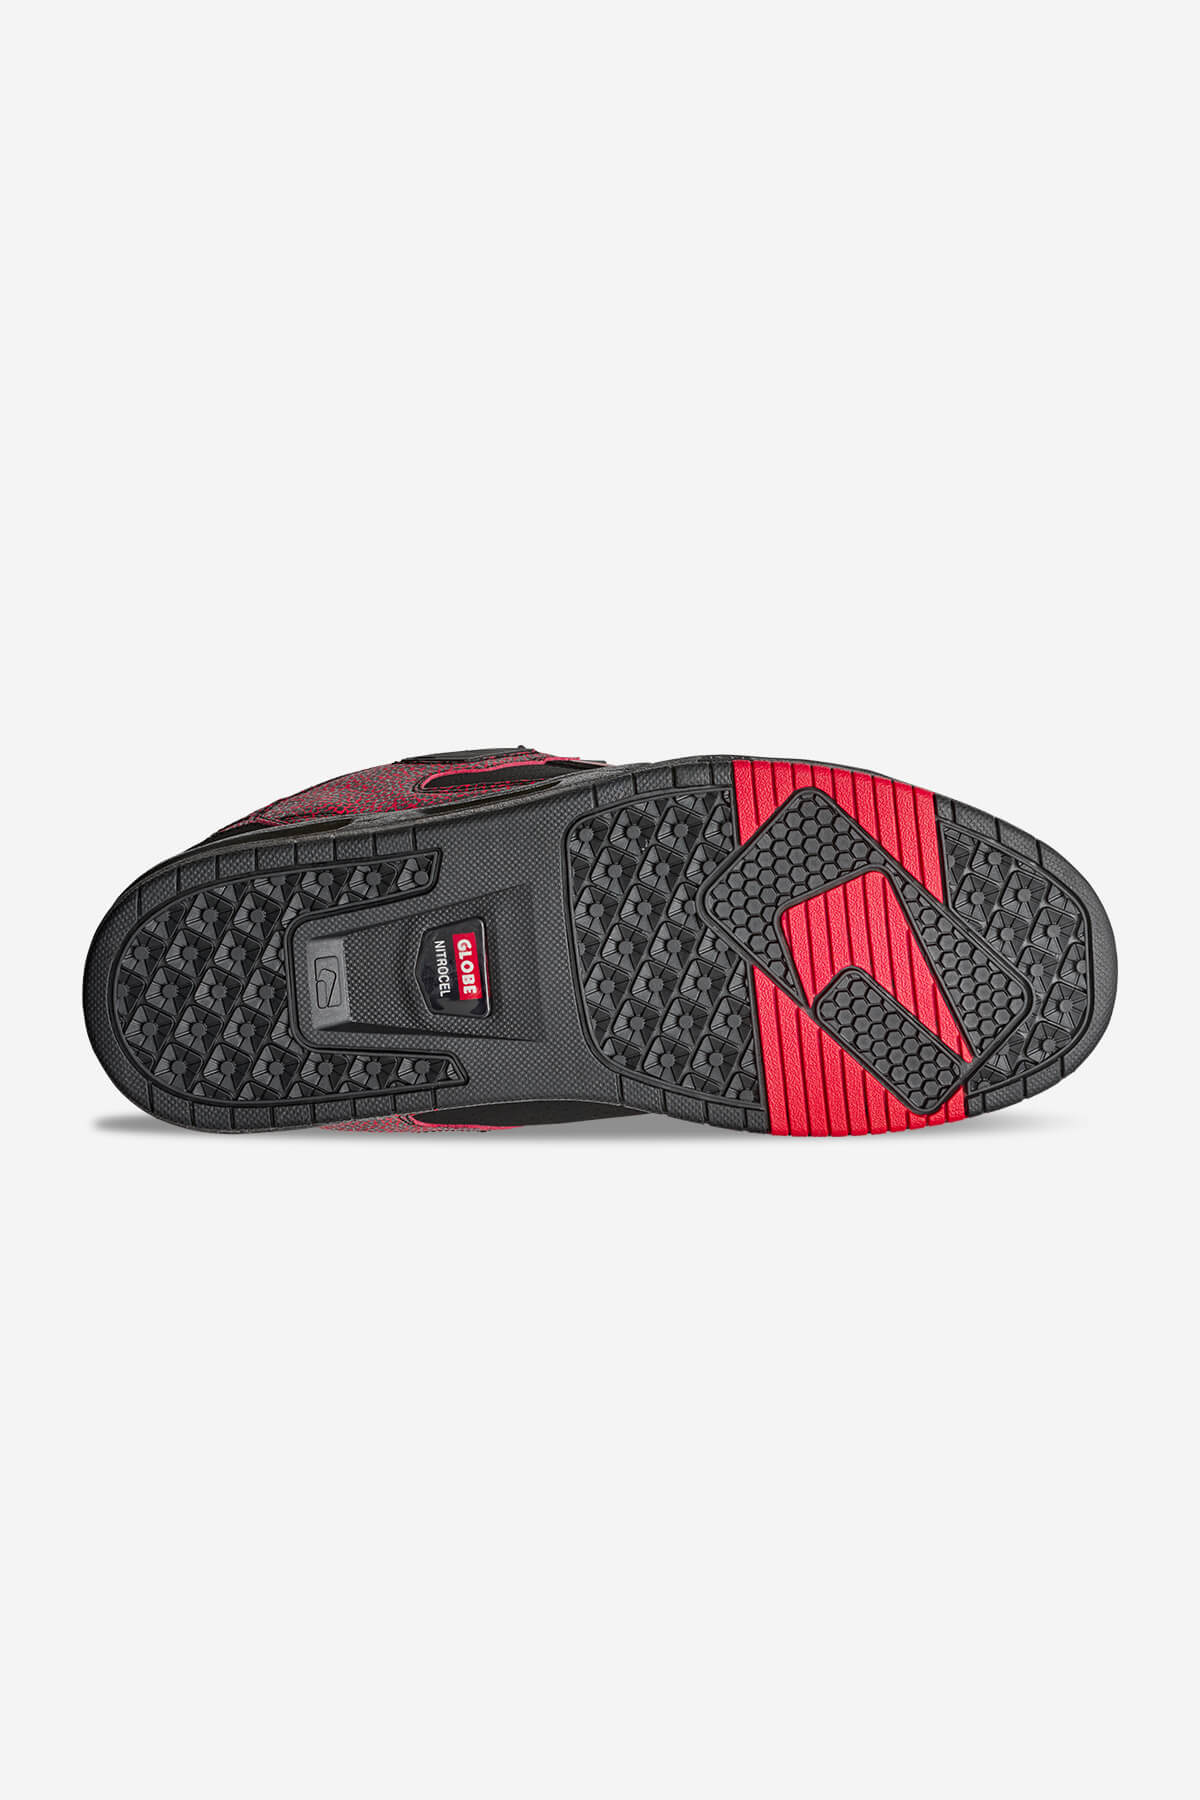 sabre black red stipple skate shoes